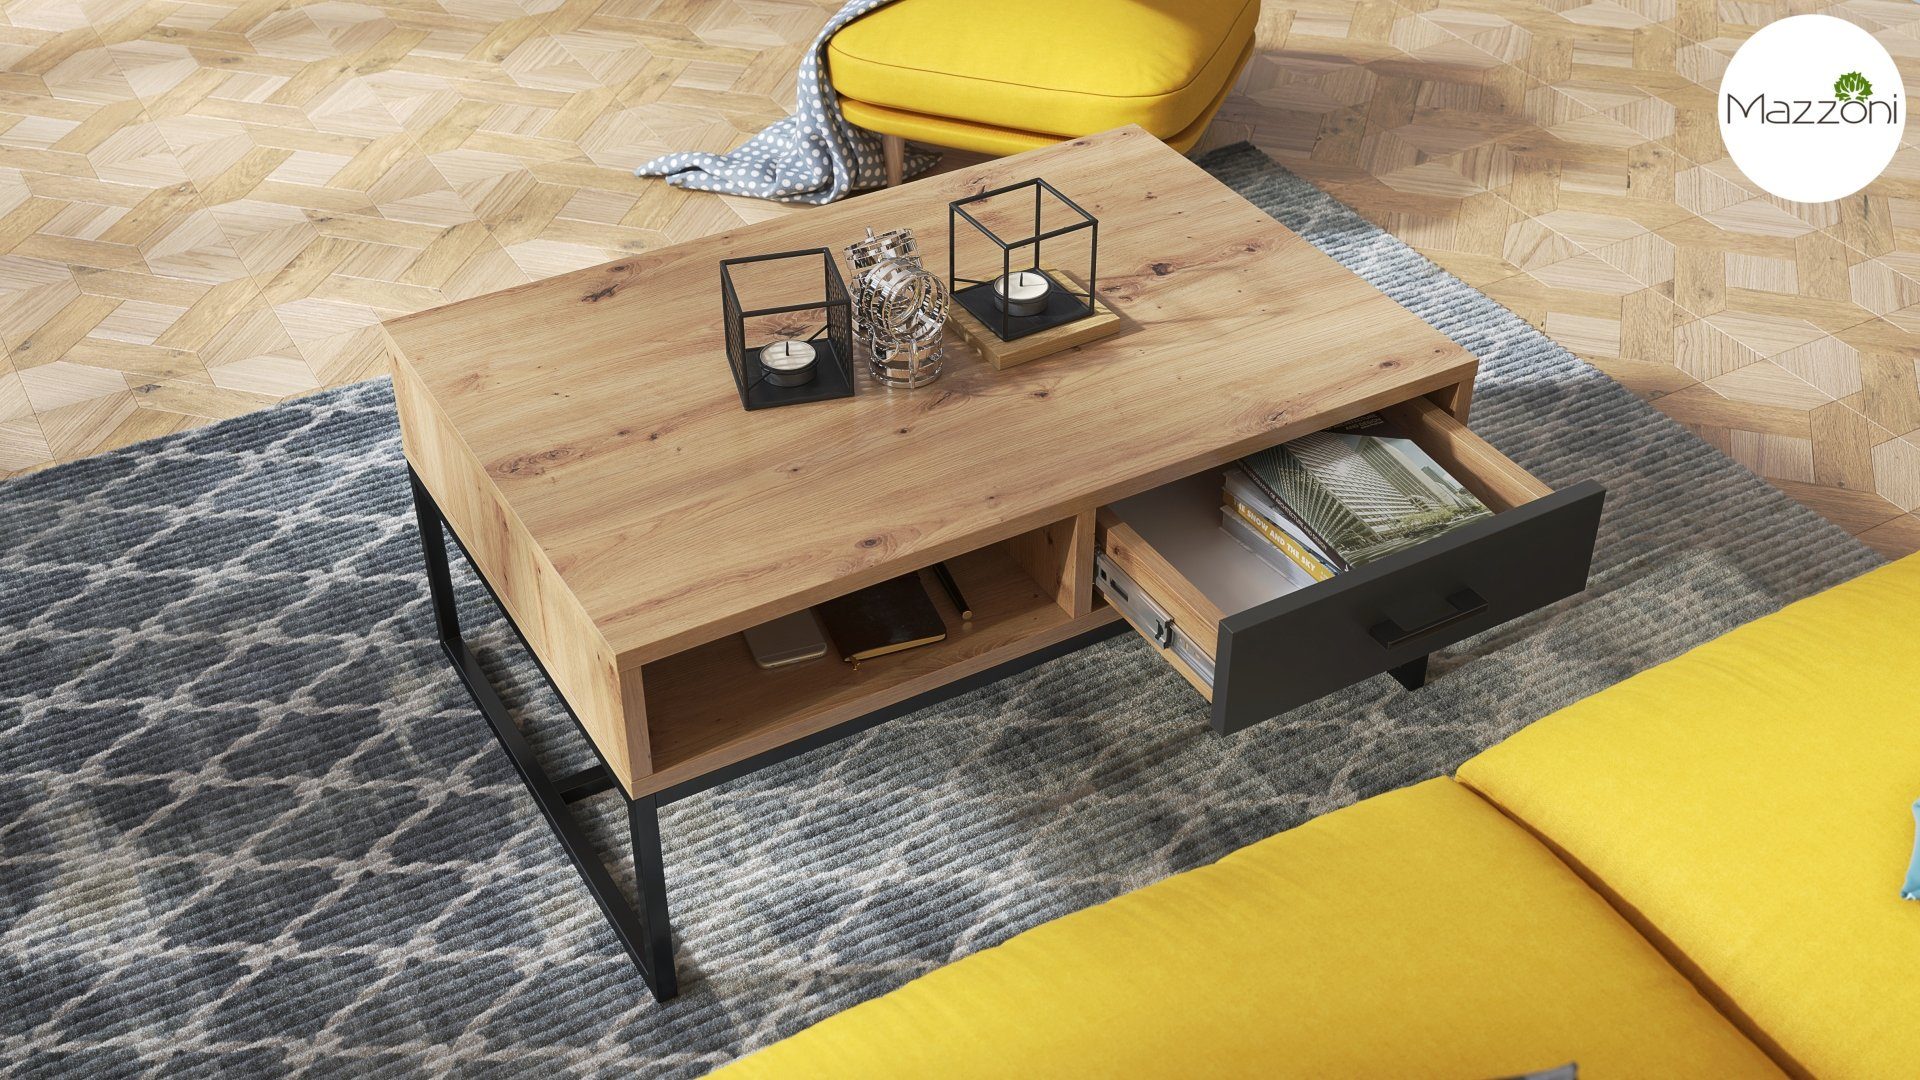 Mazzoni Couchtisch / Eiche Tisch matt Anthrazit mit Schublade Nyx 60x90x40cm Ablage Design Wohnzimmertisch Artisan